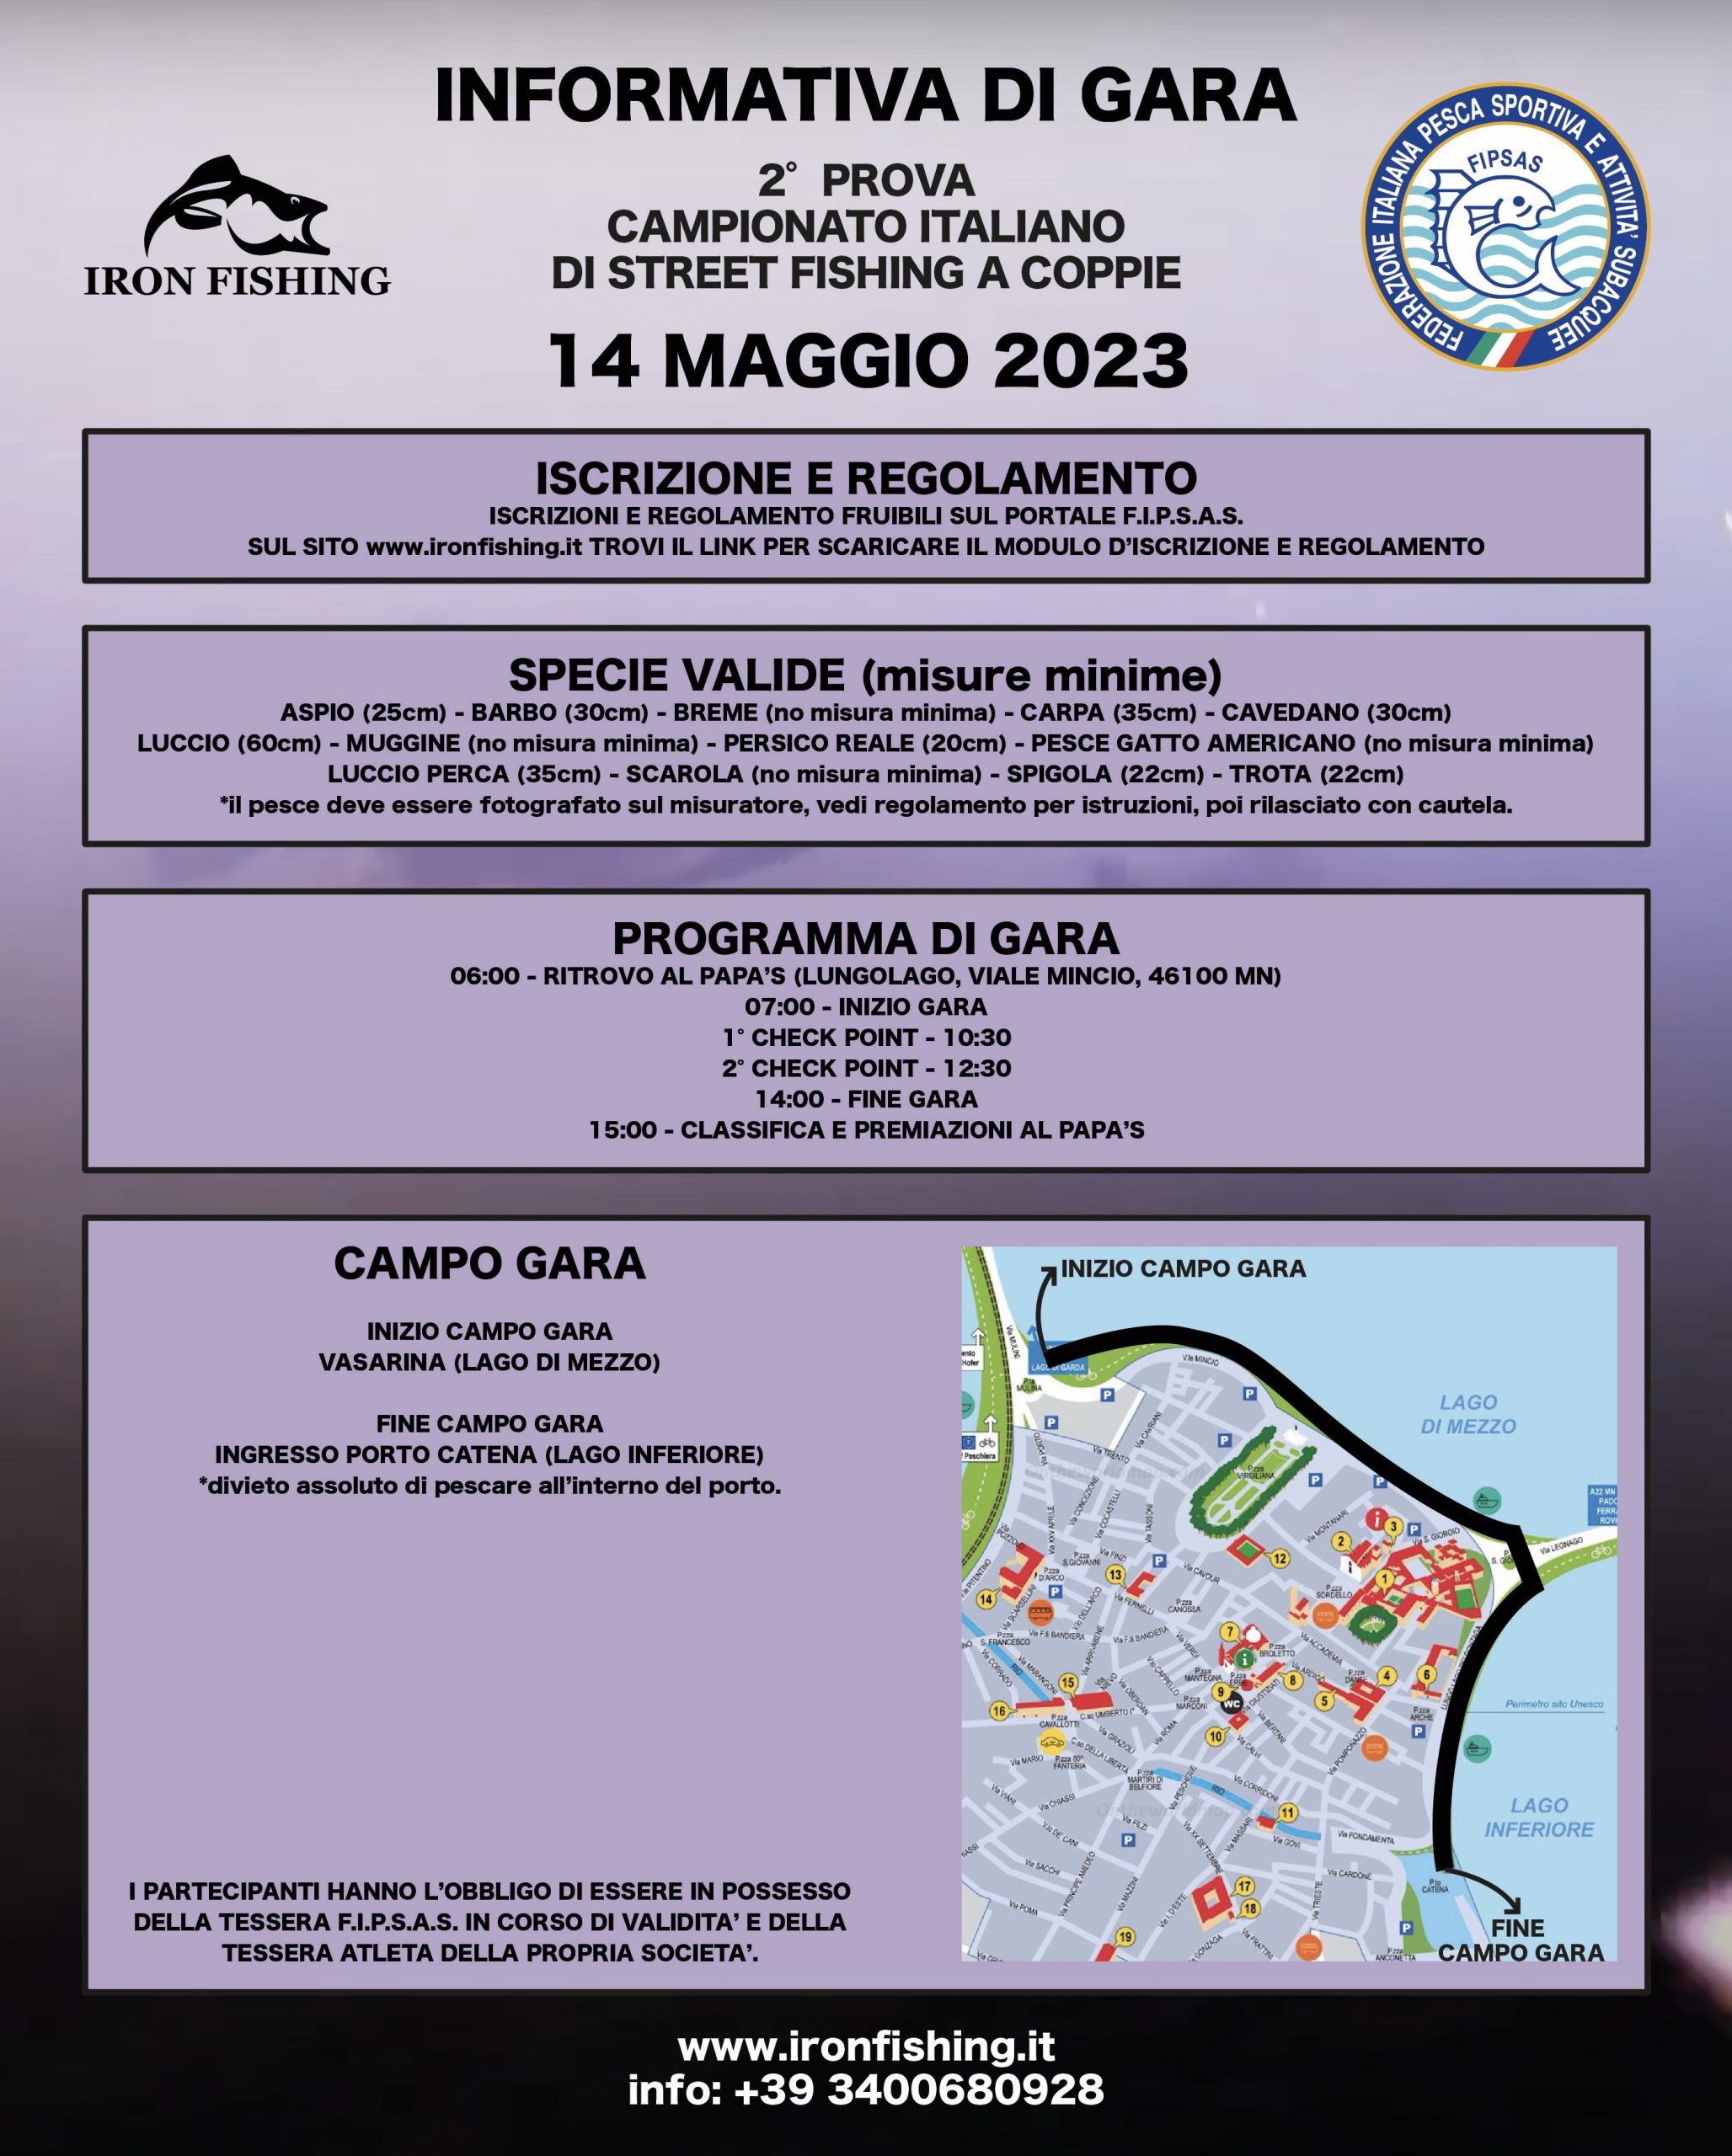 Informazioni utili per la prima prova del campionato italiano di streetfishing a mantova del 14 maggio 2023